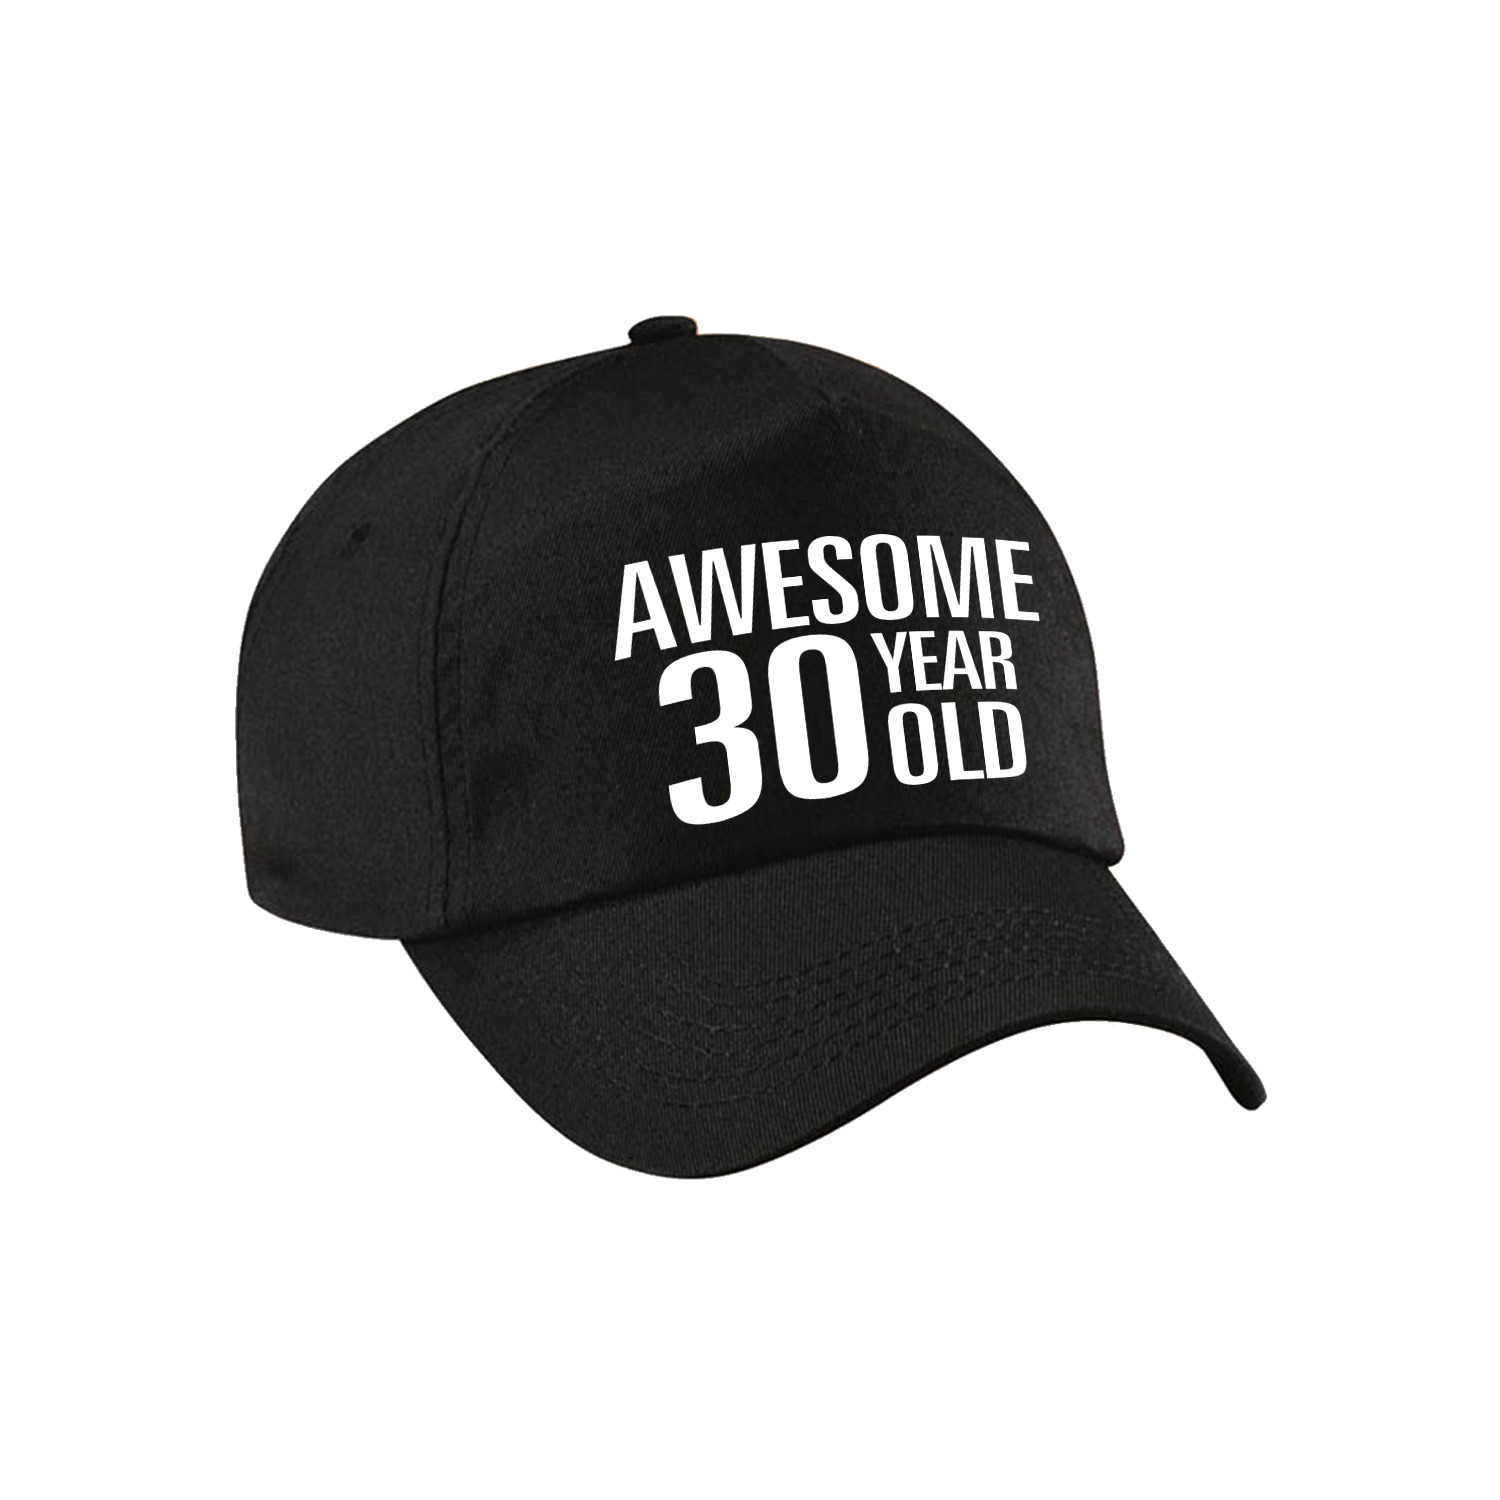 Awesome 30 year old verjaardag pet-cap zwart voor dames en heren